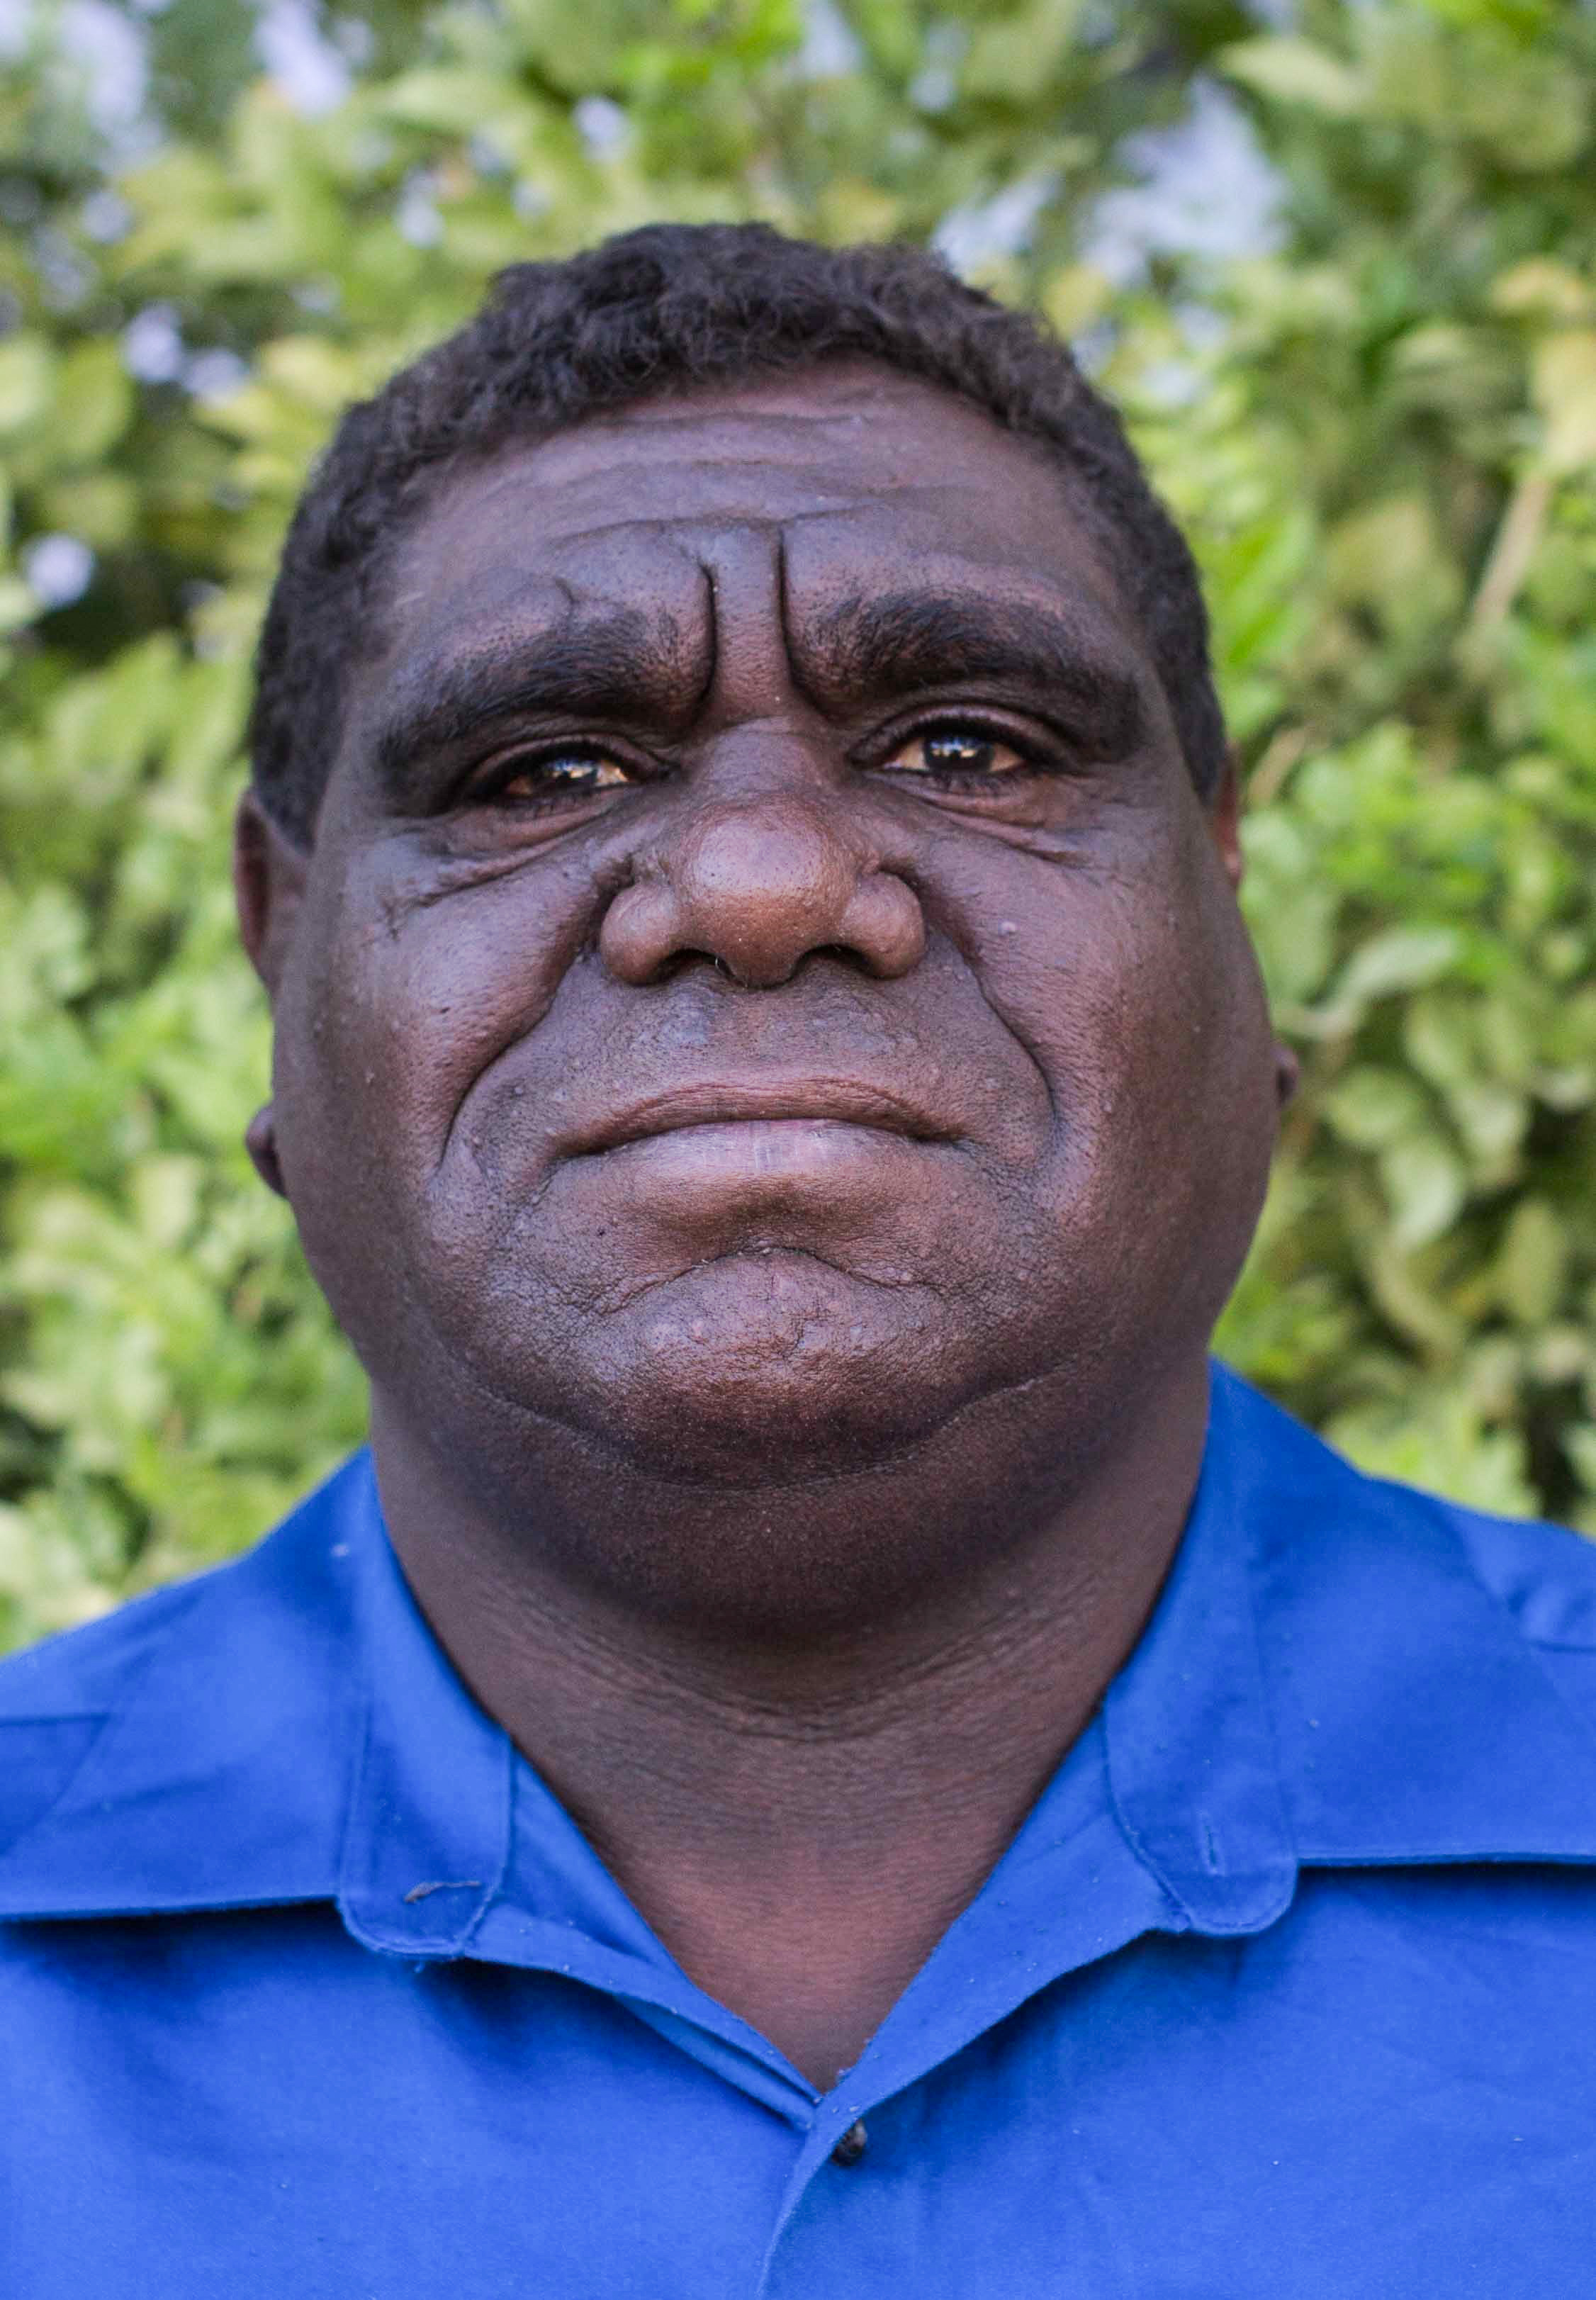 Портретное фото аборигена.